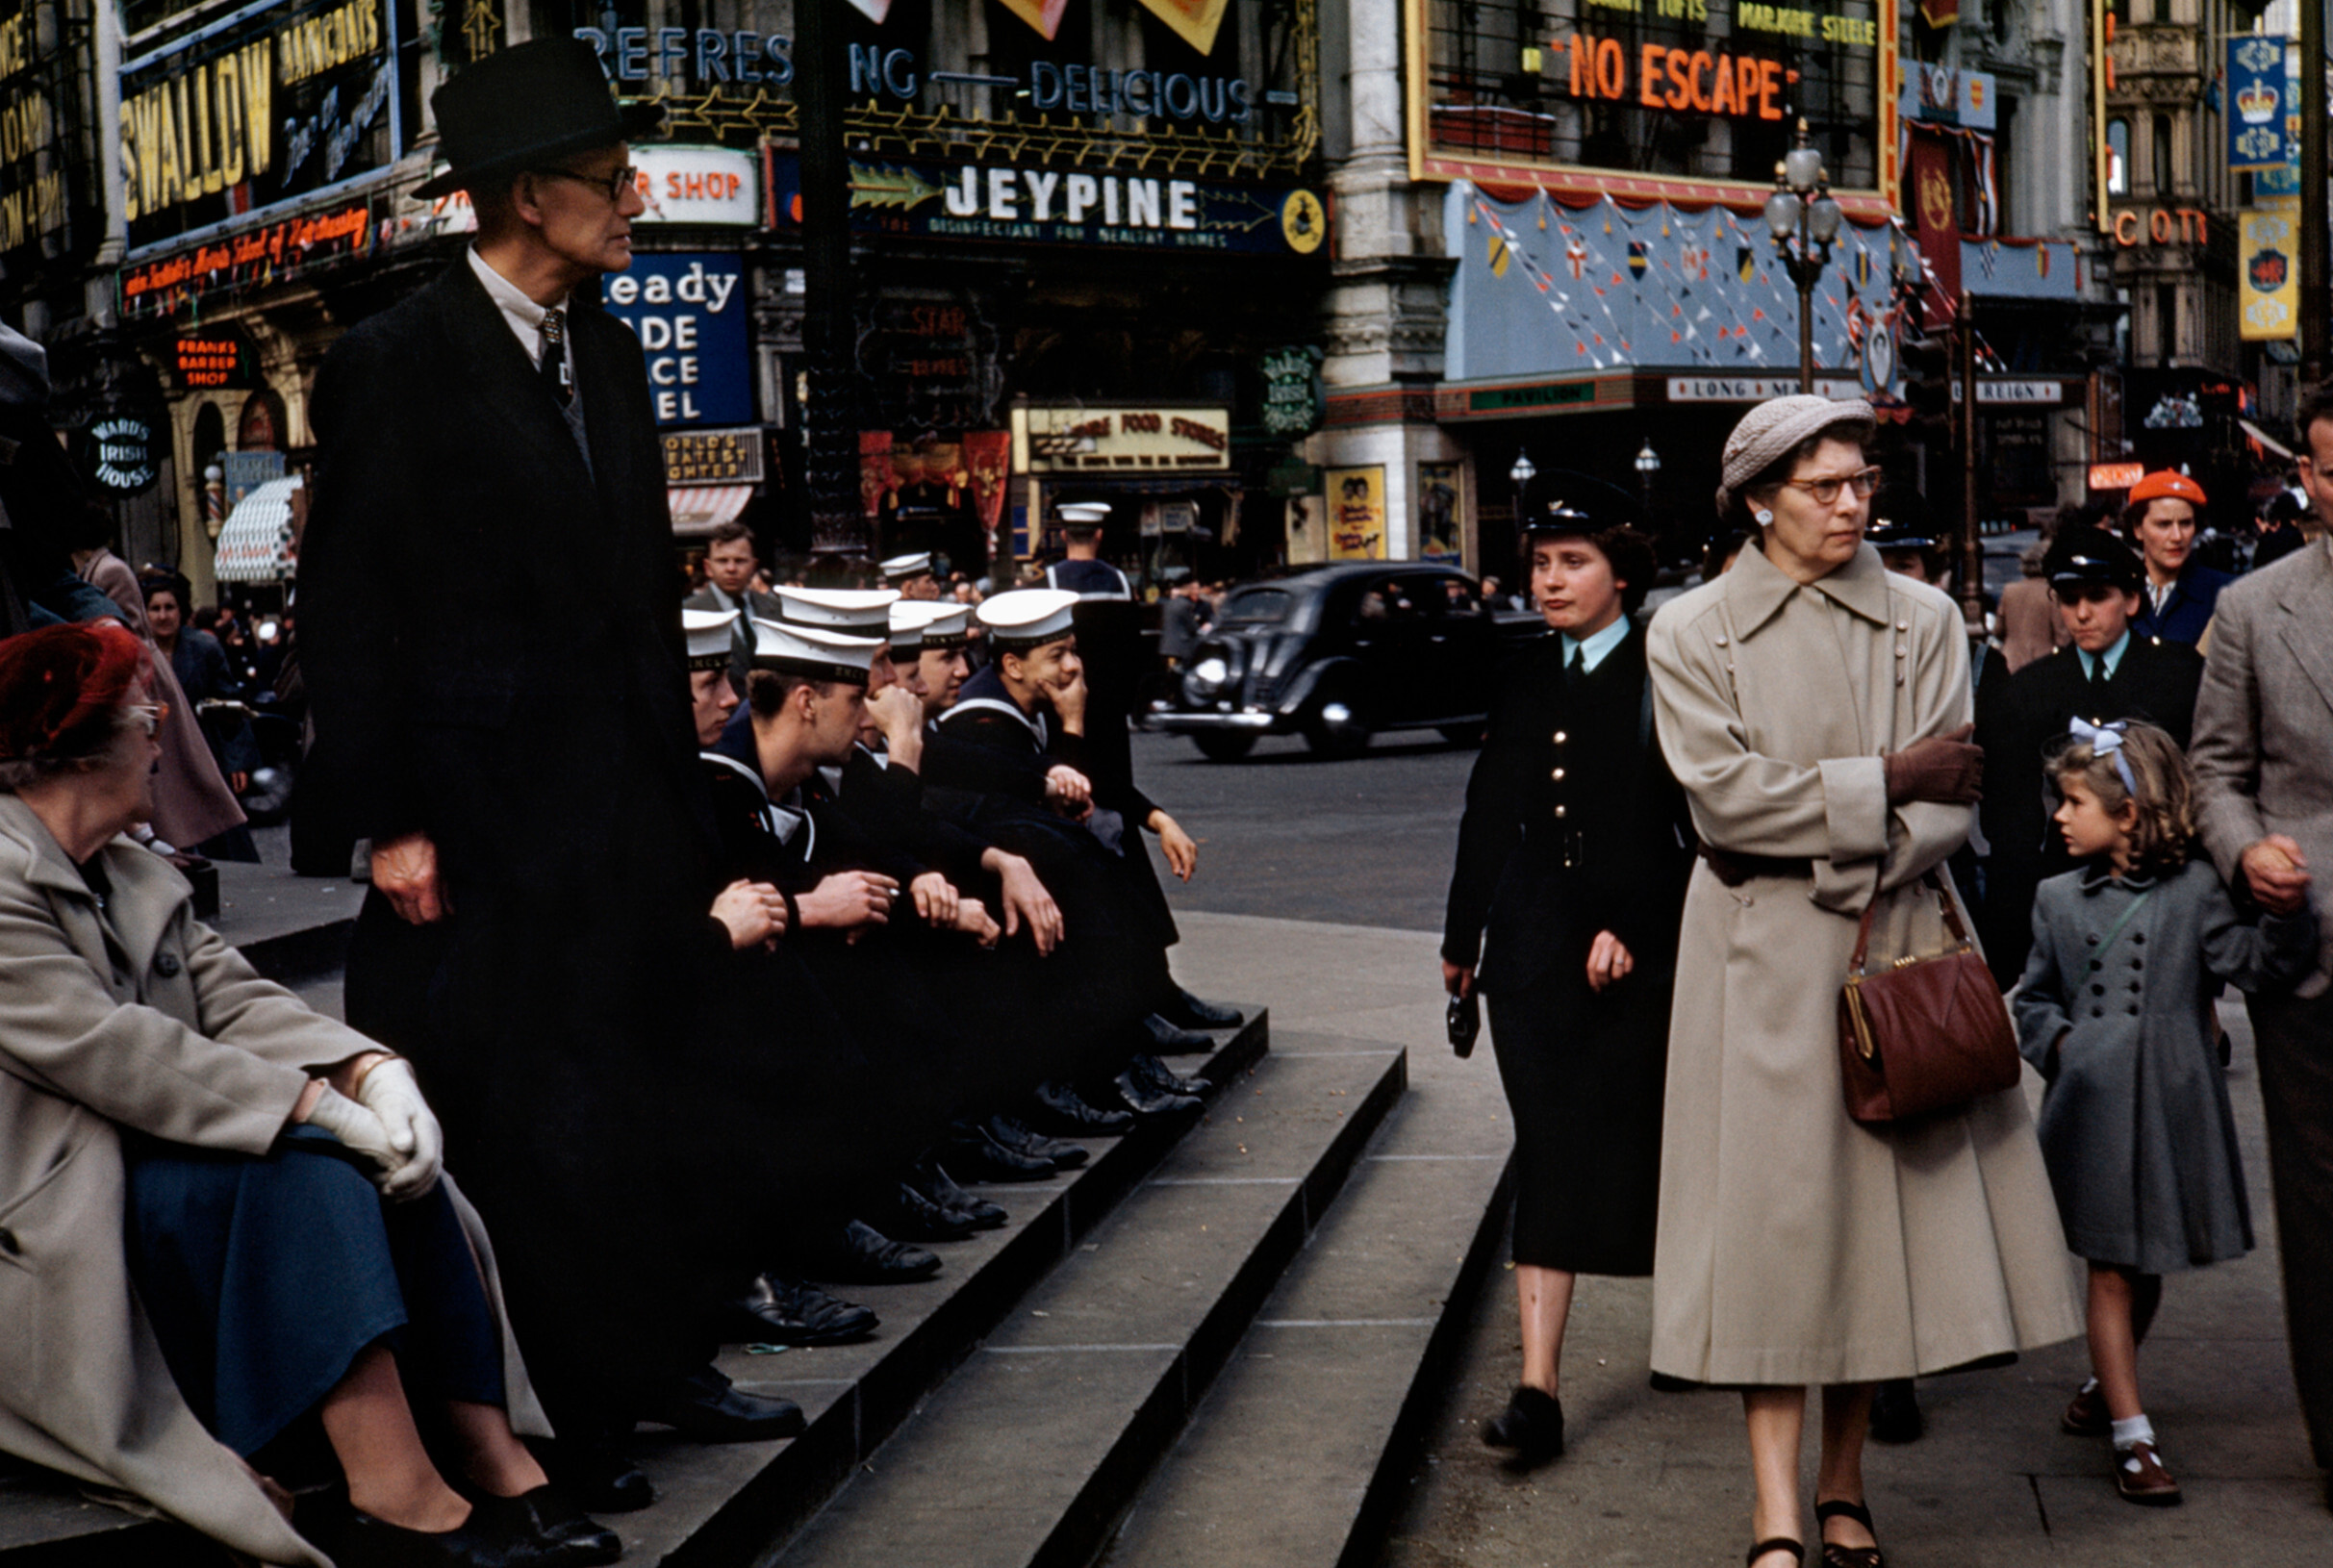 Зрители на маршруте шествия на площади Пикадилли перед коронацией королевы Елизаветы II, Лондон, 2 июня 1953 года.  Фотограф Роберт Капа